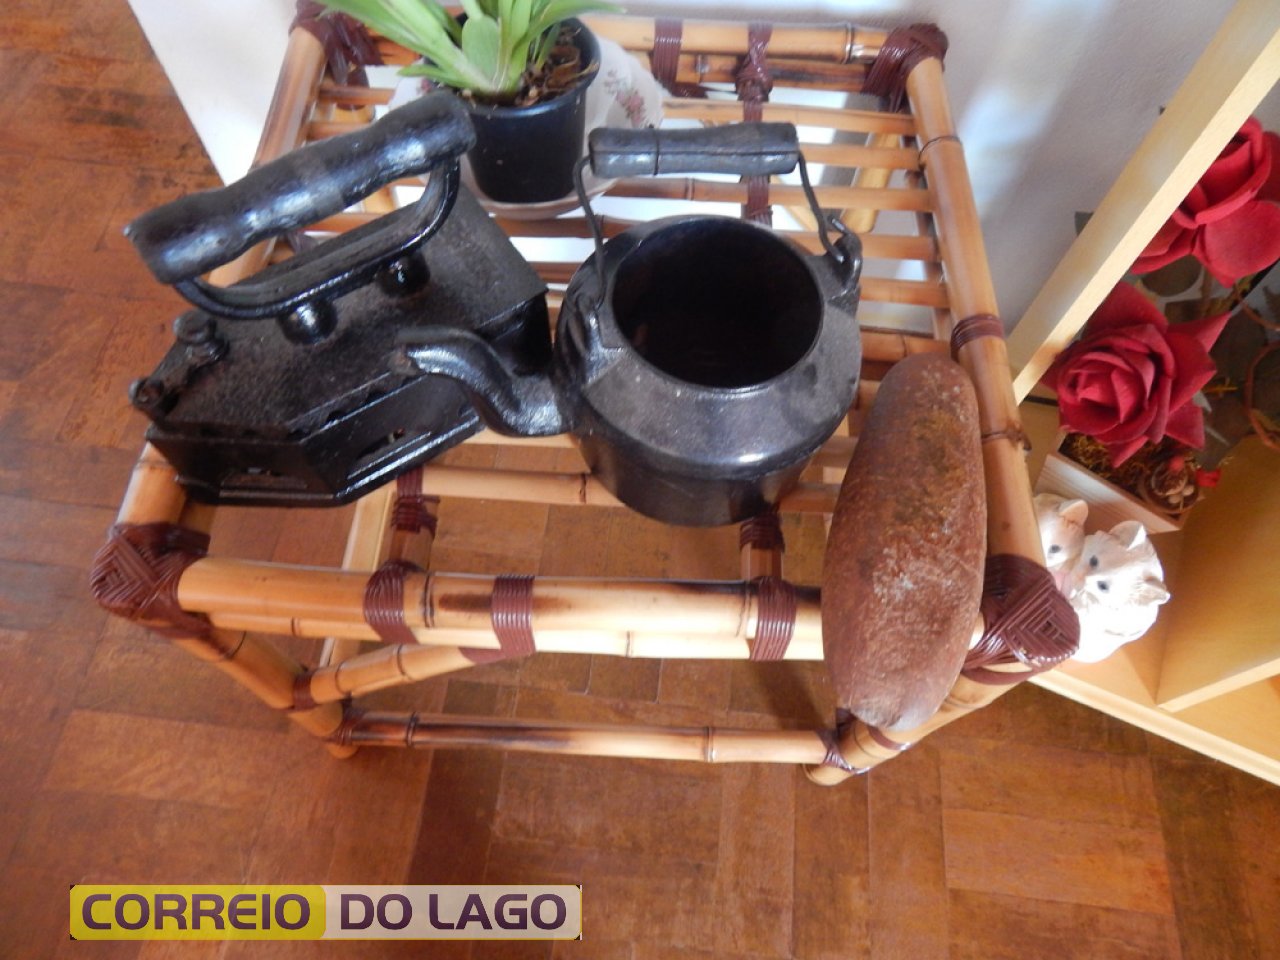 Utensílios domésticos usados no passado pela família de Marino (chaleira e ferro de passar roupas)